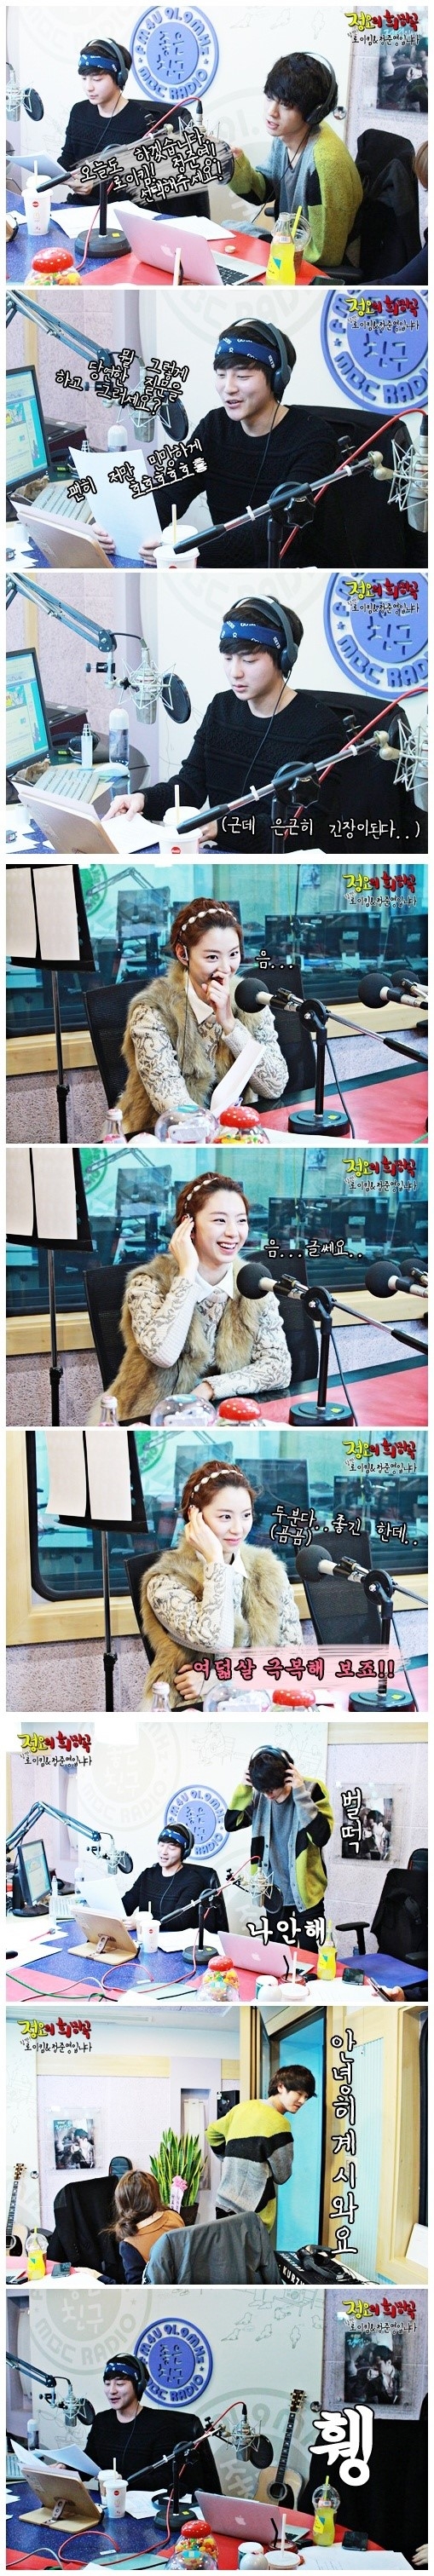 로이킴의 라디오 방송에 출연했던 박수진. / MBC 홈페이지